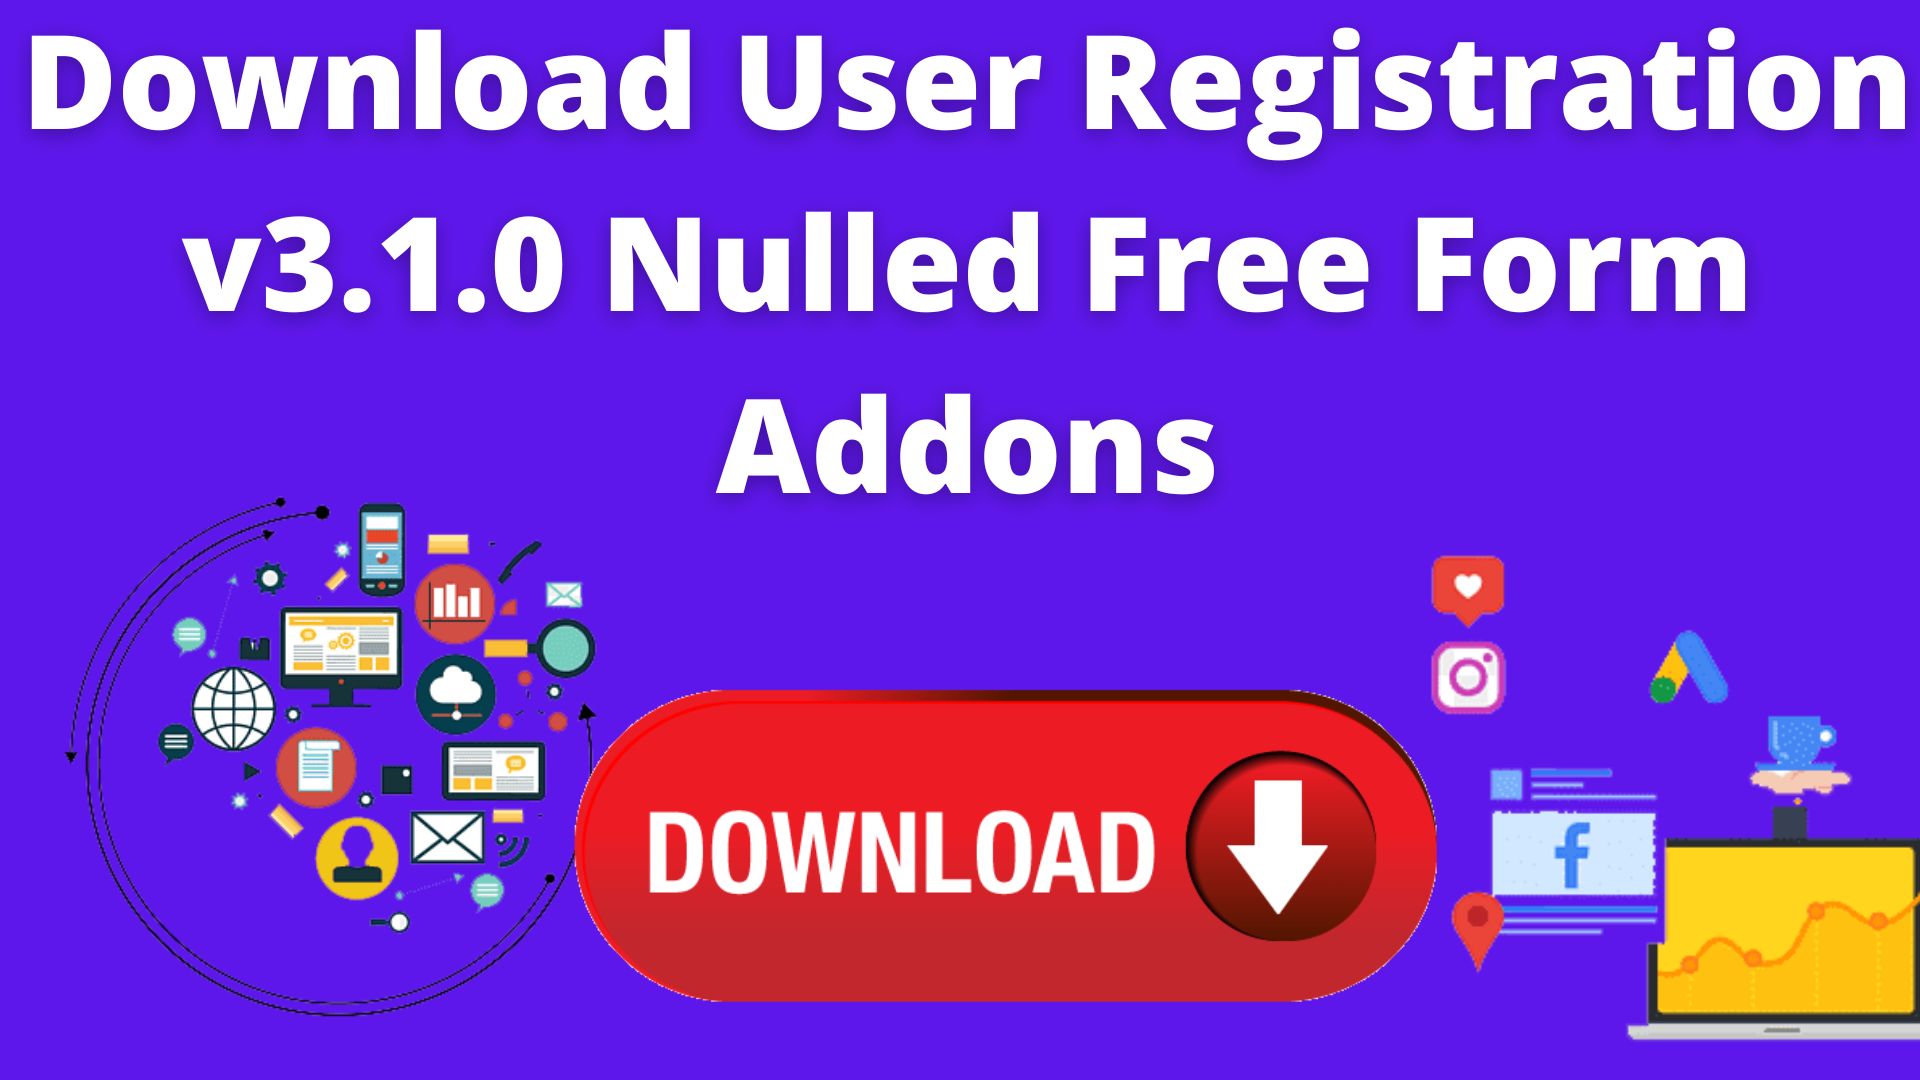 Download User Registration V3.1.0 Nulled Free Form Addons